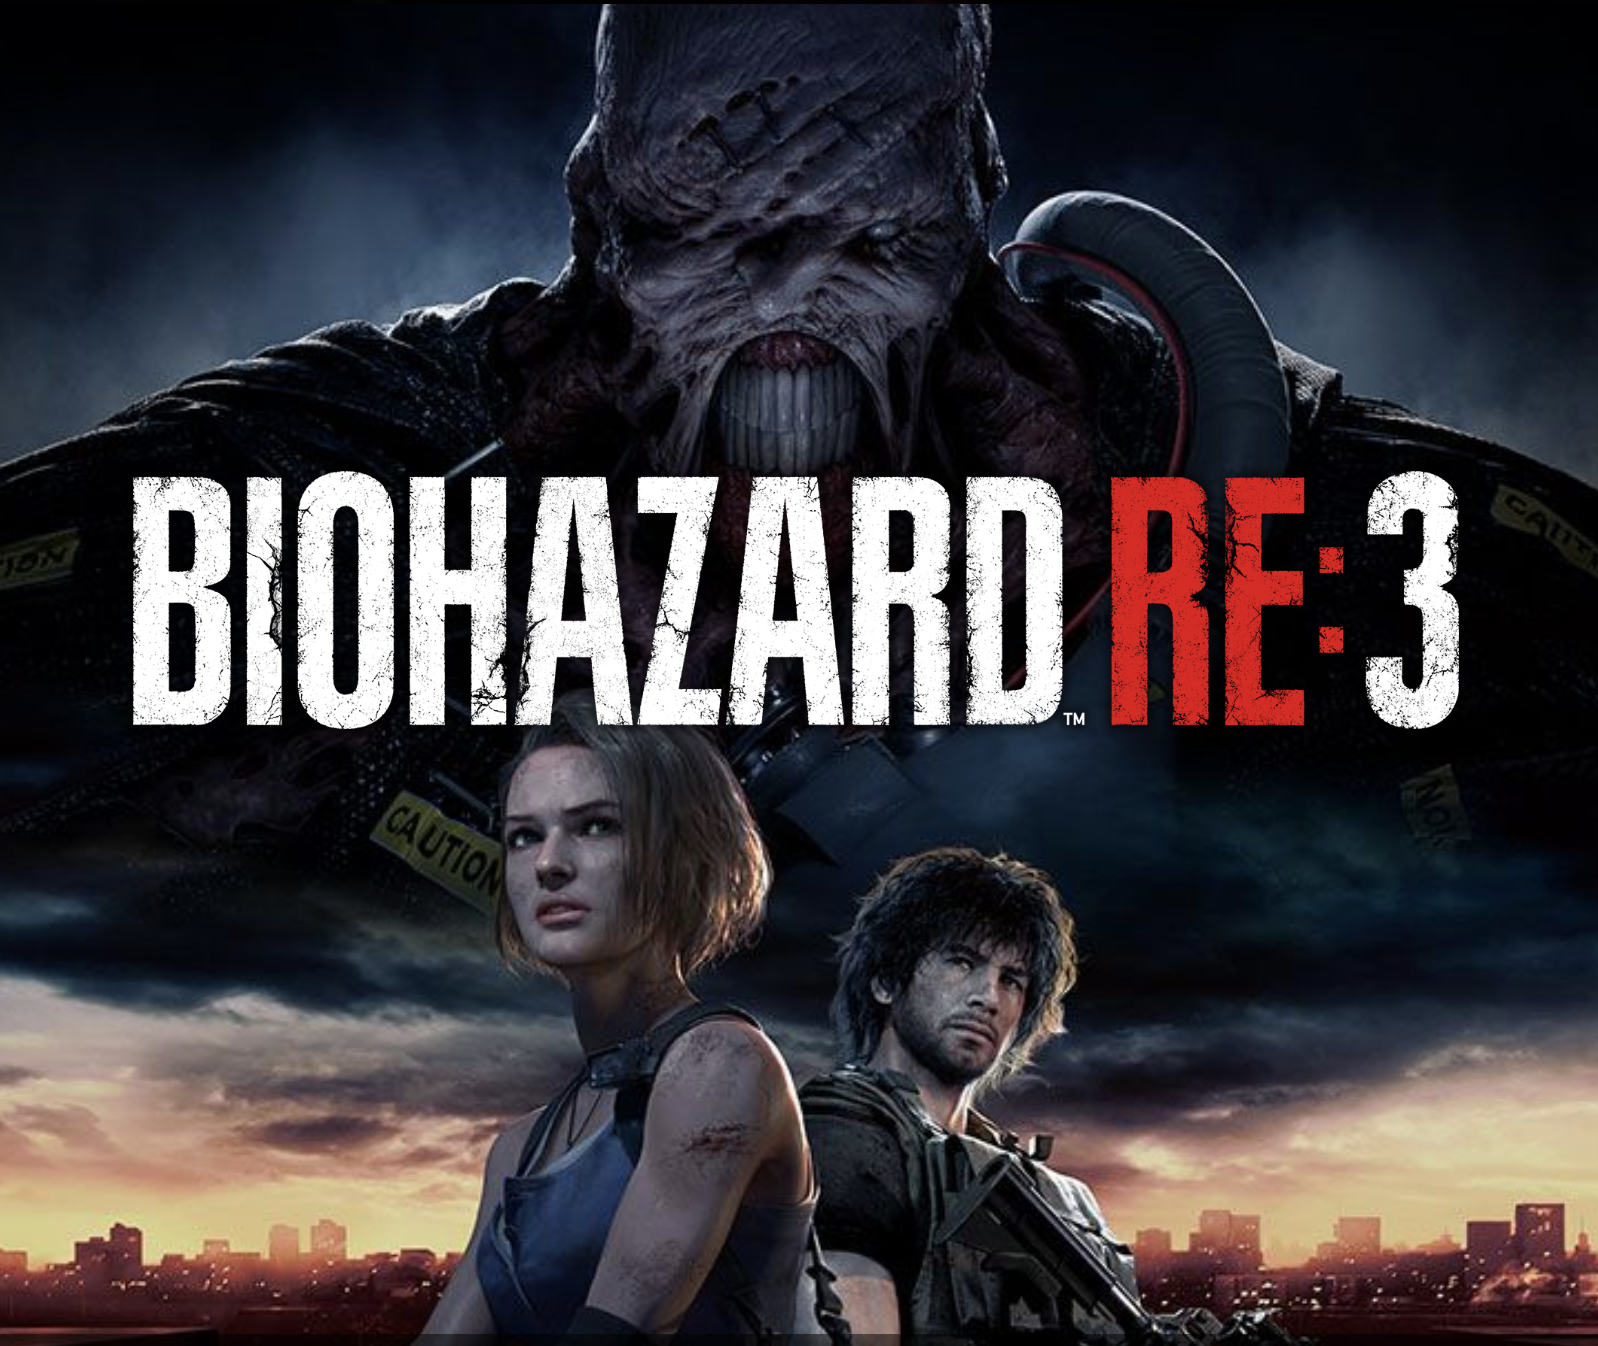 バイオハザード Re 3 Biohazard Re 3 のネタバレ解説 考察まとめ 8 11 Renote リノート